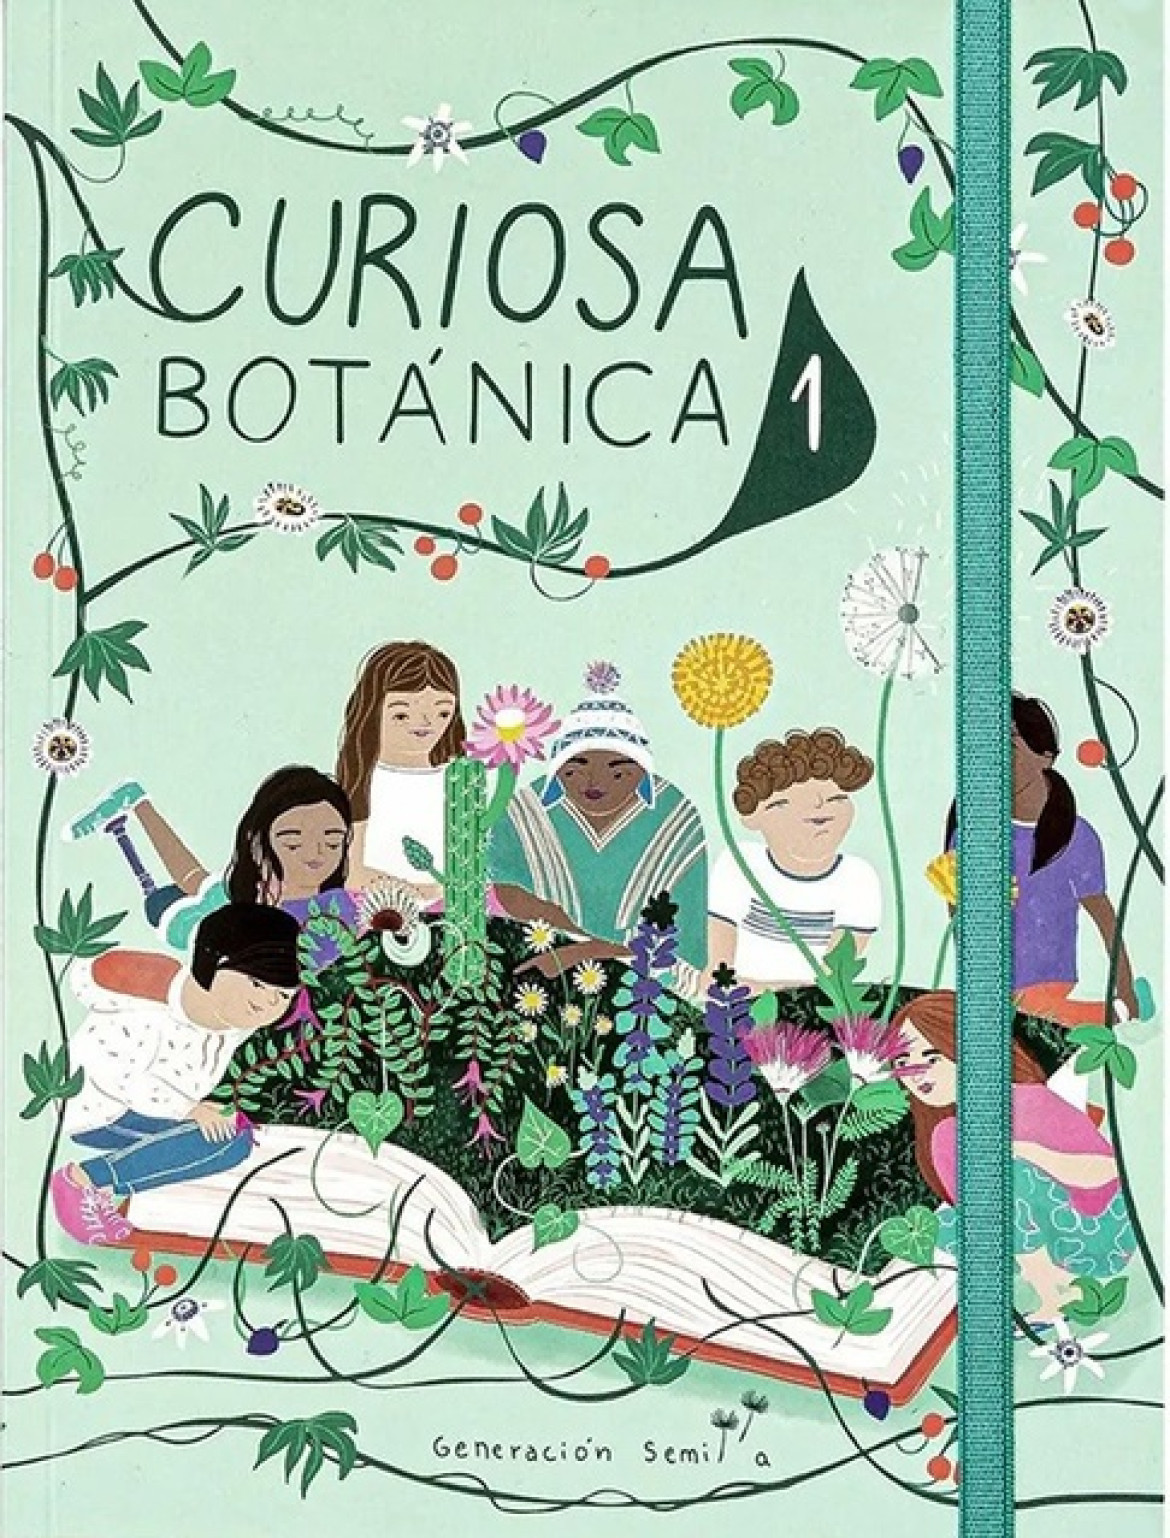 Portada del libro infantil "Curiosa Botánica 1". Foto: Generación Semilla.